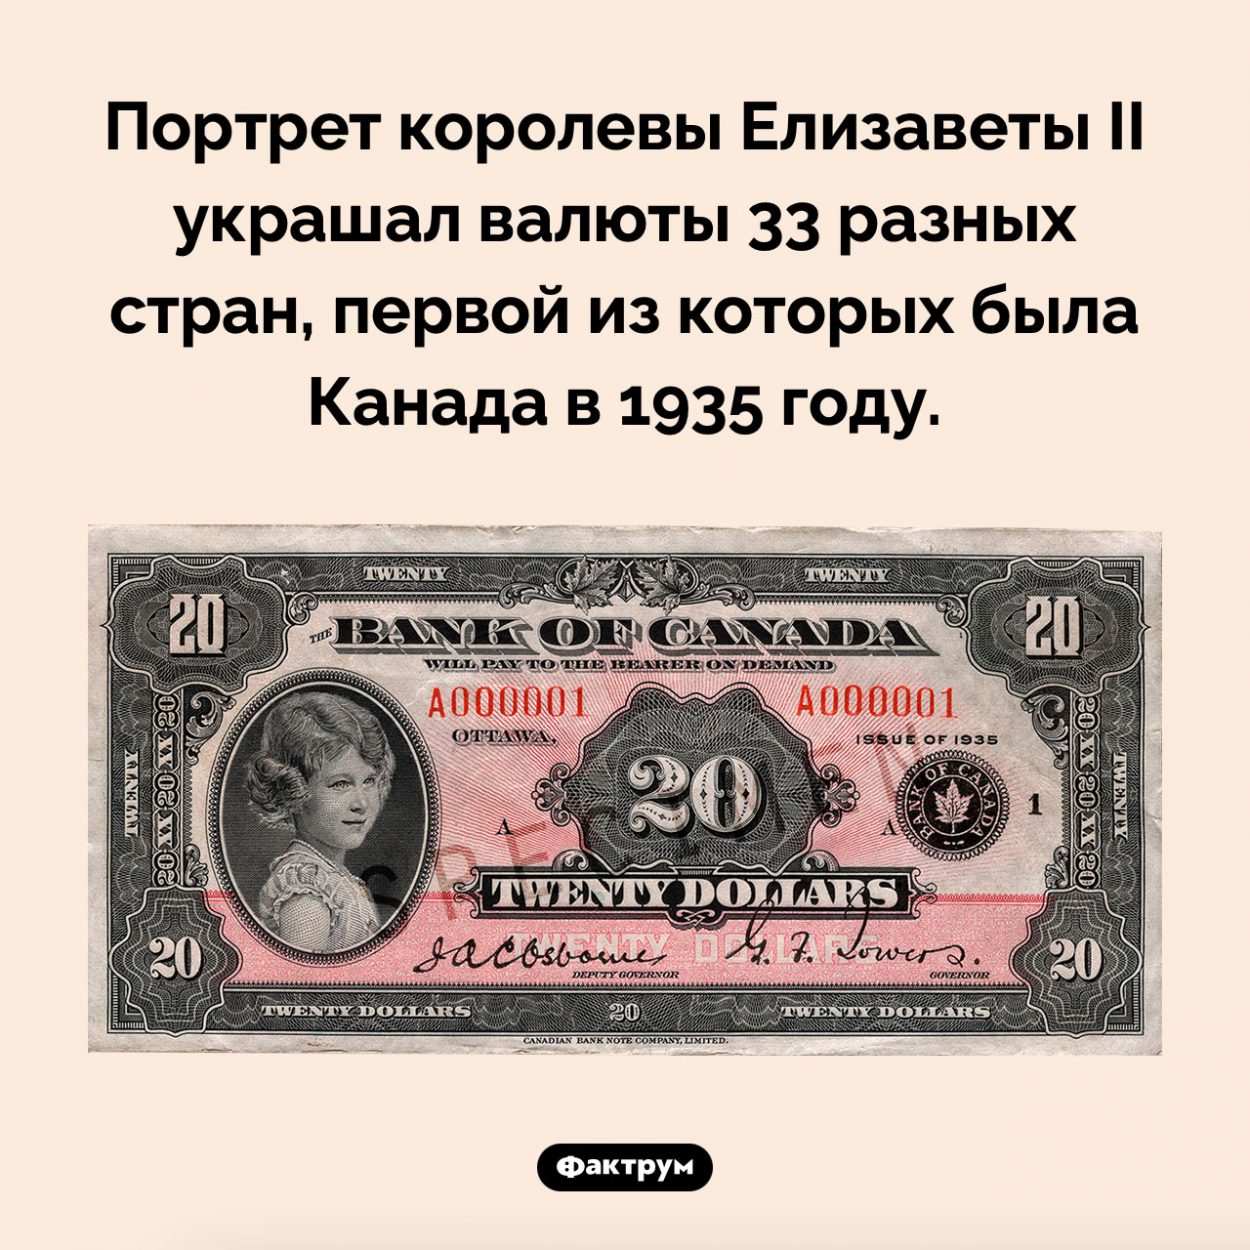 Валюты каких стран украшал портрет королевы Елизаветы II. Портрет королевы Елизаветы II украшал валюты 33 разных стран, первой из которых была Канада в 1935 году.